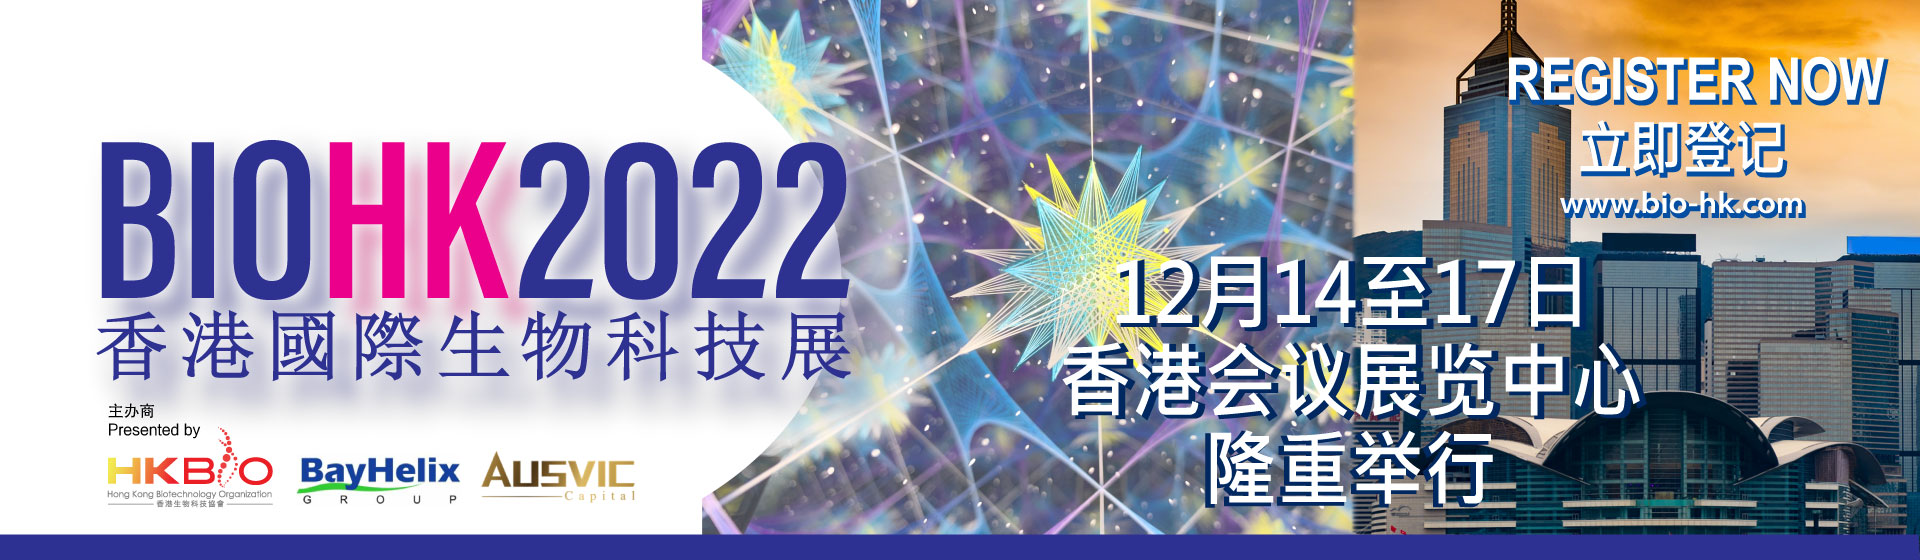 香港國際生物科技展 BIOHK2022 將於兩週內開幕